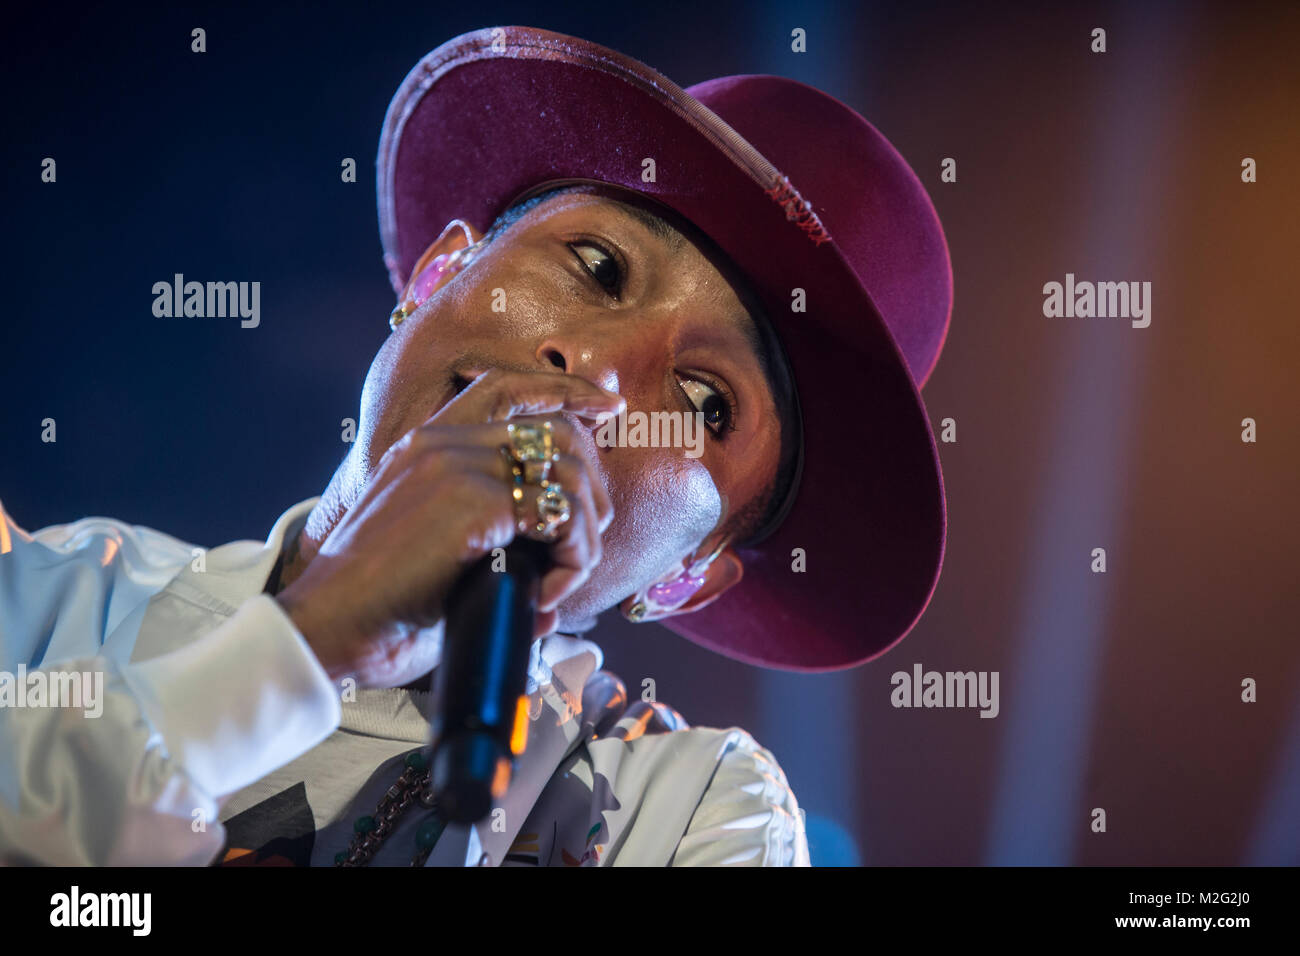 Der amerikanische Musikproduzent und Sänger Pharrell Williams spielt am Freitag (26.09.2014) ein Konzert in der Festhalle Frankfurt. Auf seiner 'Dear Girl'-Tour macht der 41-jährige noch Halt in Düsseldorf und Stuttgart. +++ 3S PHOTO / Foto: Sven-Sebastian Sajak Stock Photo